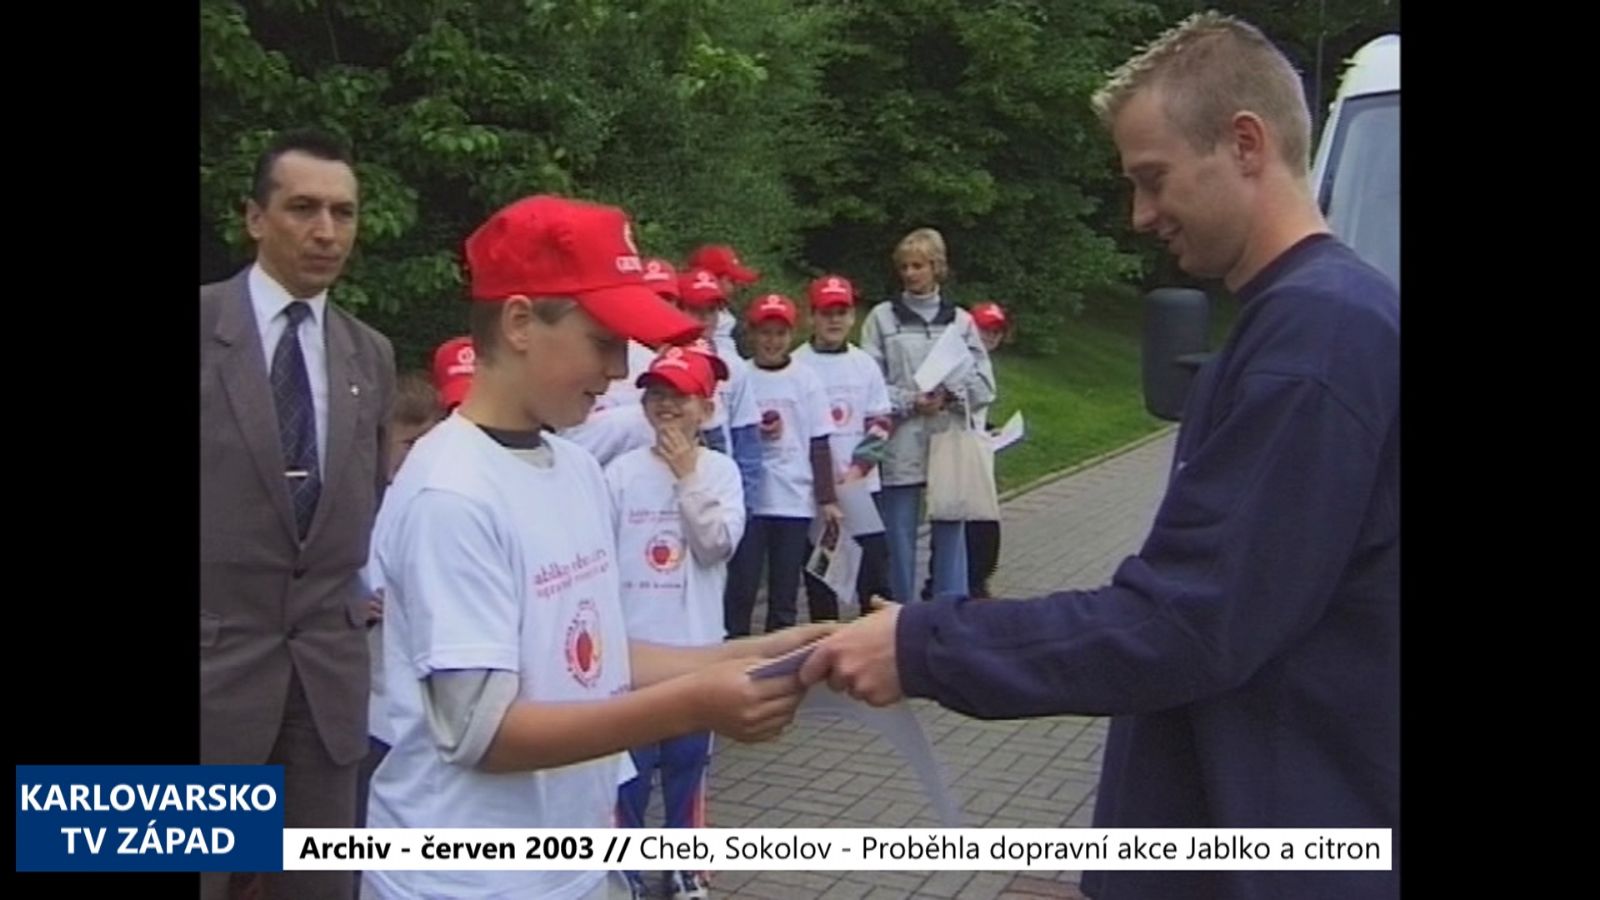 2003 – Cheb, Sokolov: Proběhla dopravní akce Jablko a citron (TV Západ)